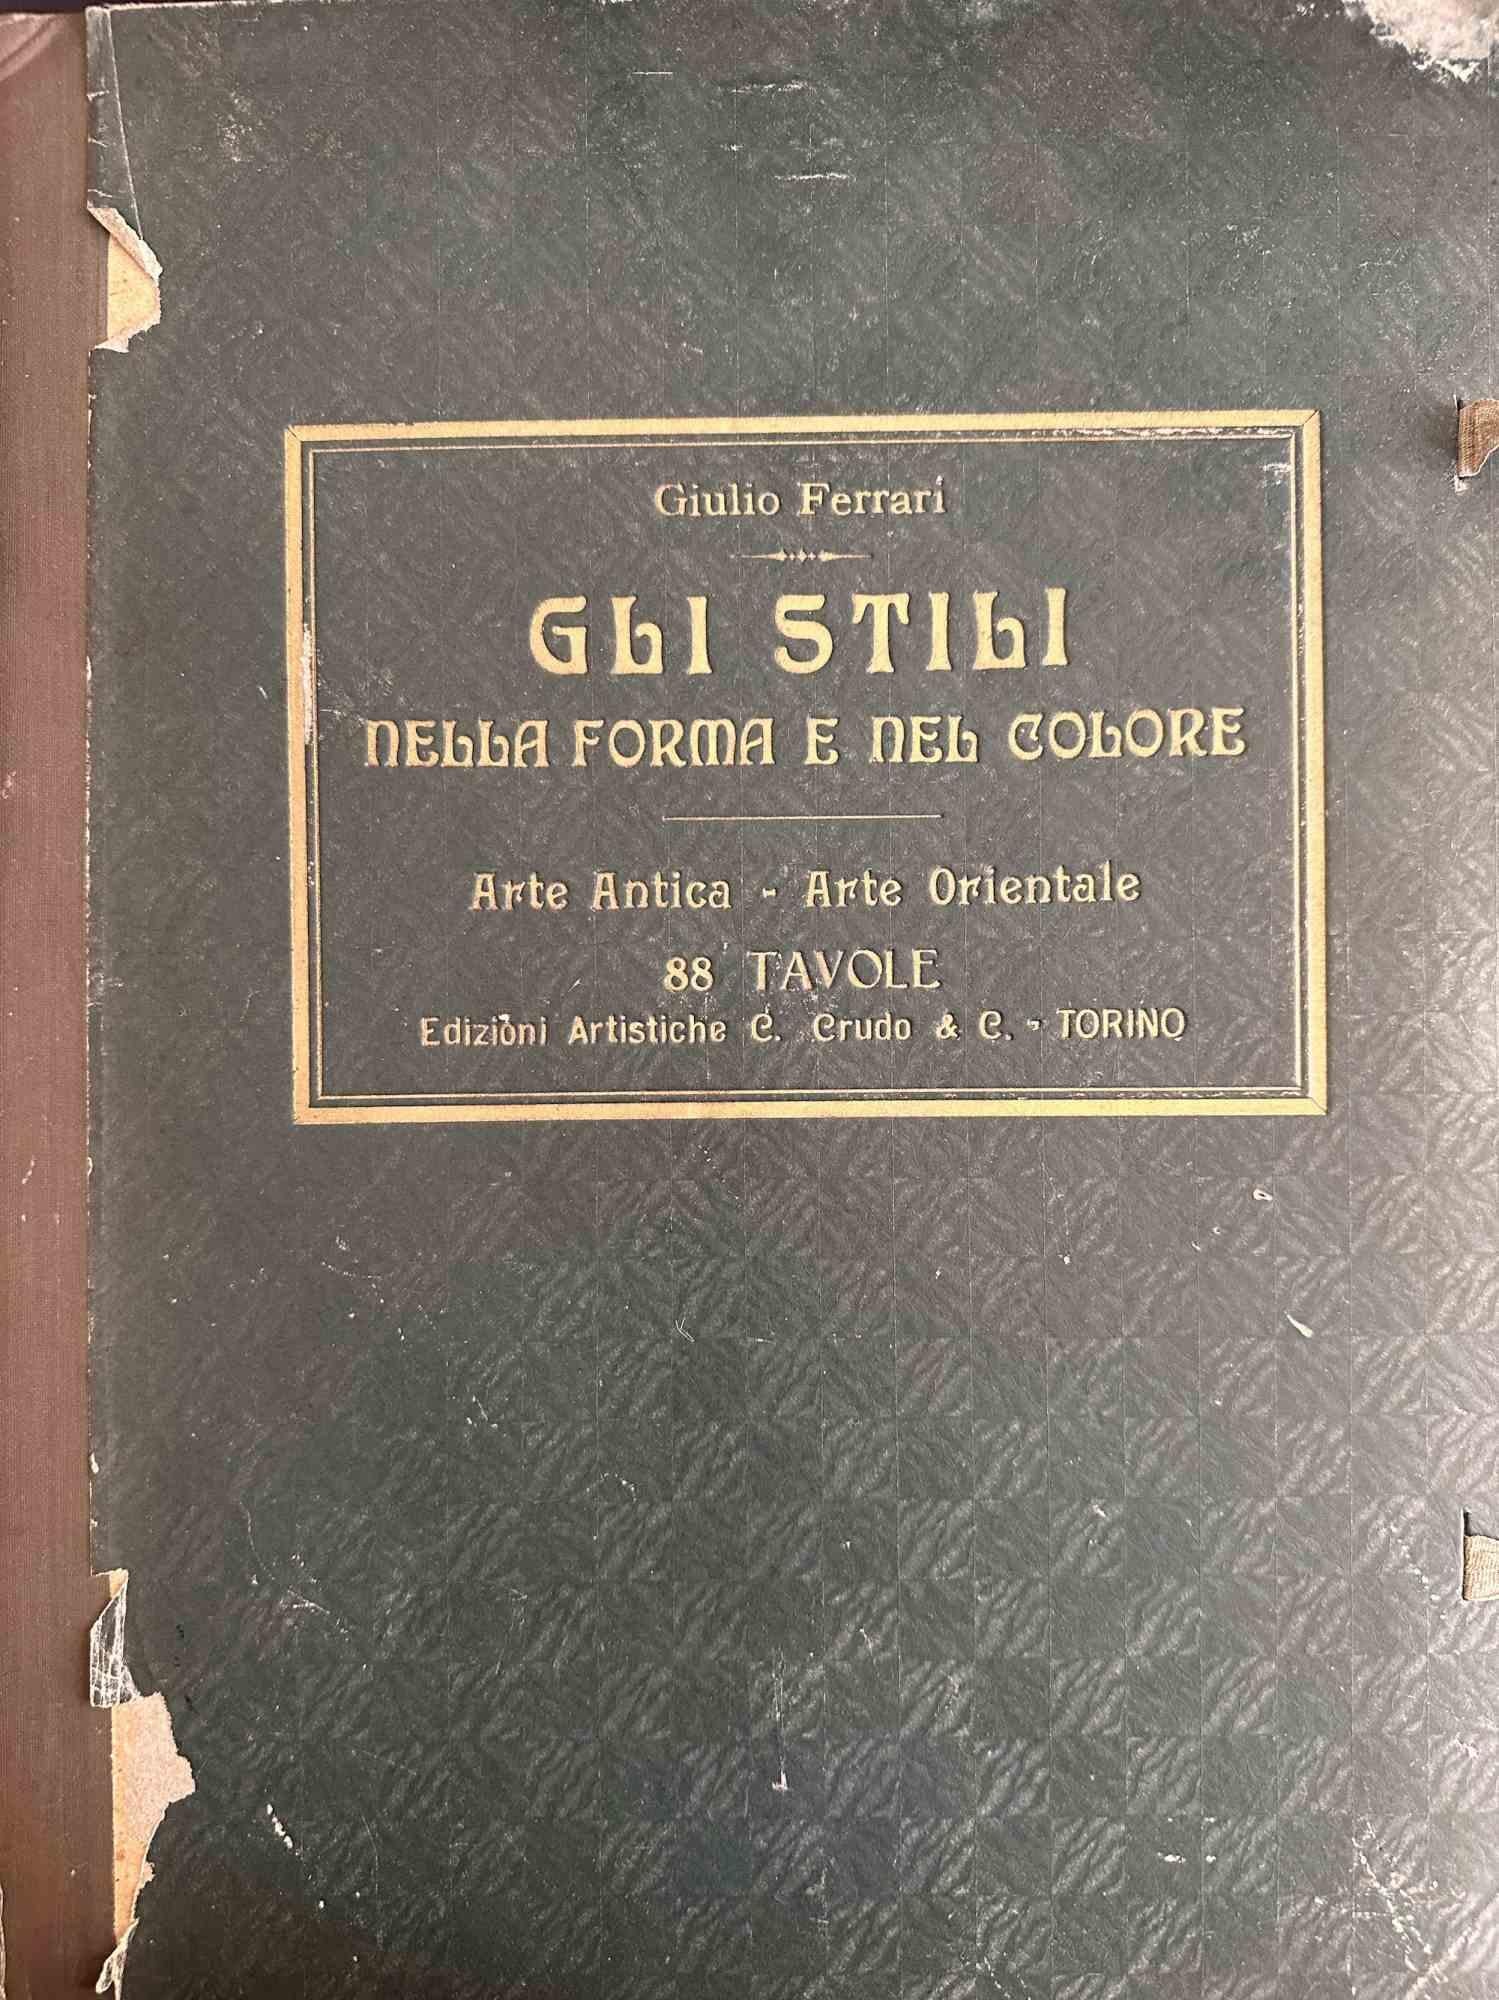 Book of Style in Form und Farbe ist ein seltenes und wertvolles Buch, das 1925 von Giulio Ferrari realisiert wurde.

Artistische Ausgabe C. Cruda, Turin.

88 Teller, antike Kunst und orientalische Kunst.

Fair Bedingungen, mit Erklärung und gealtert